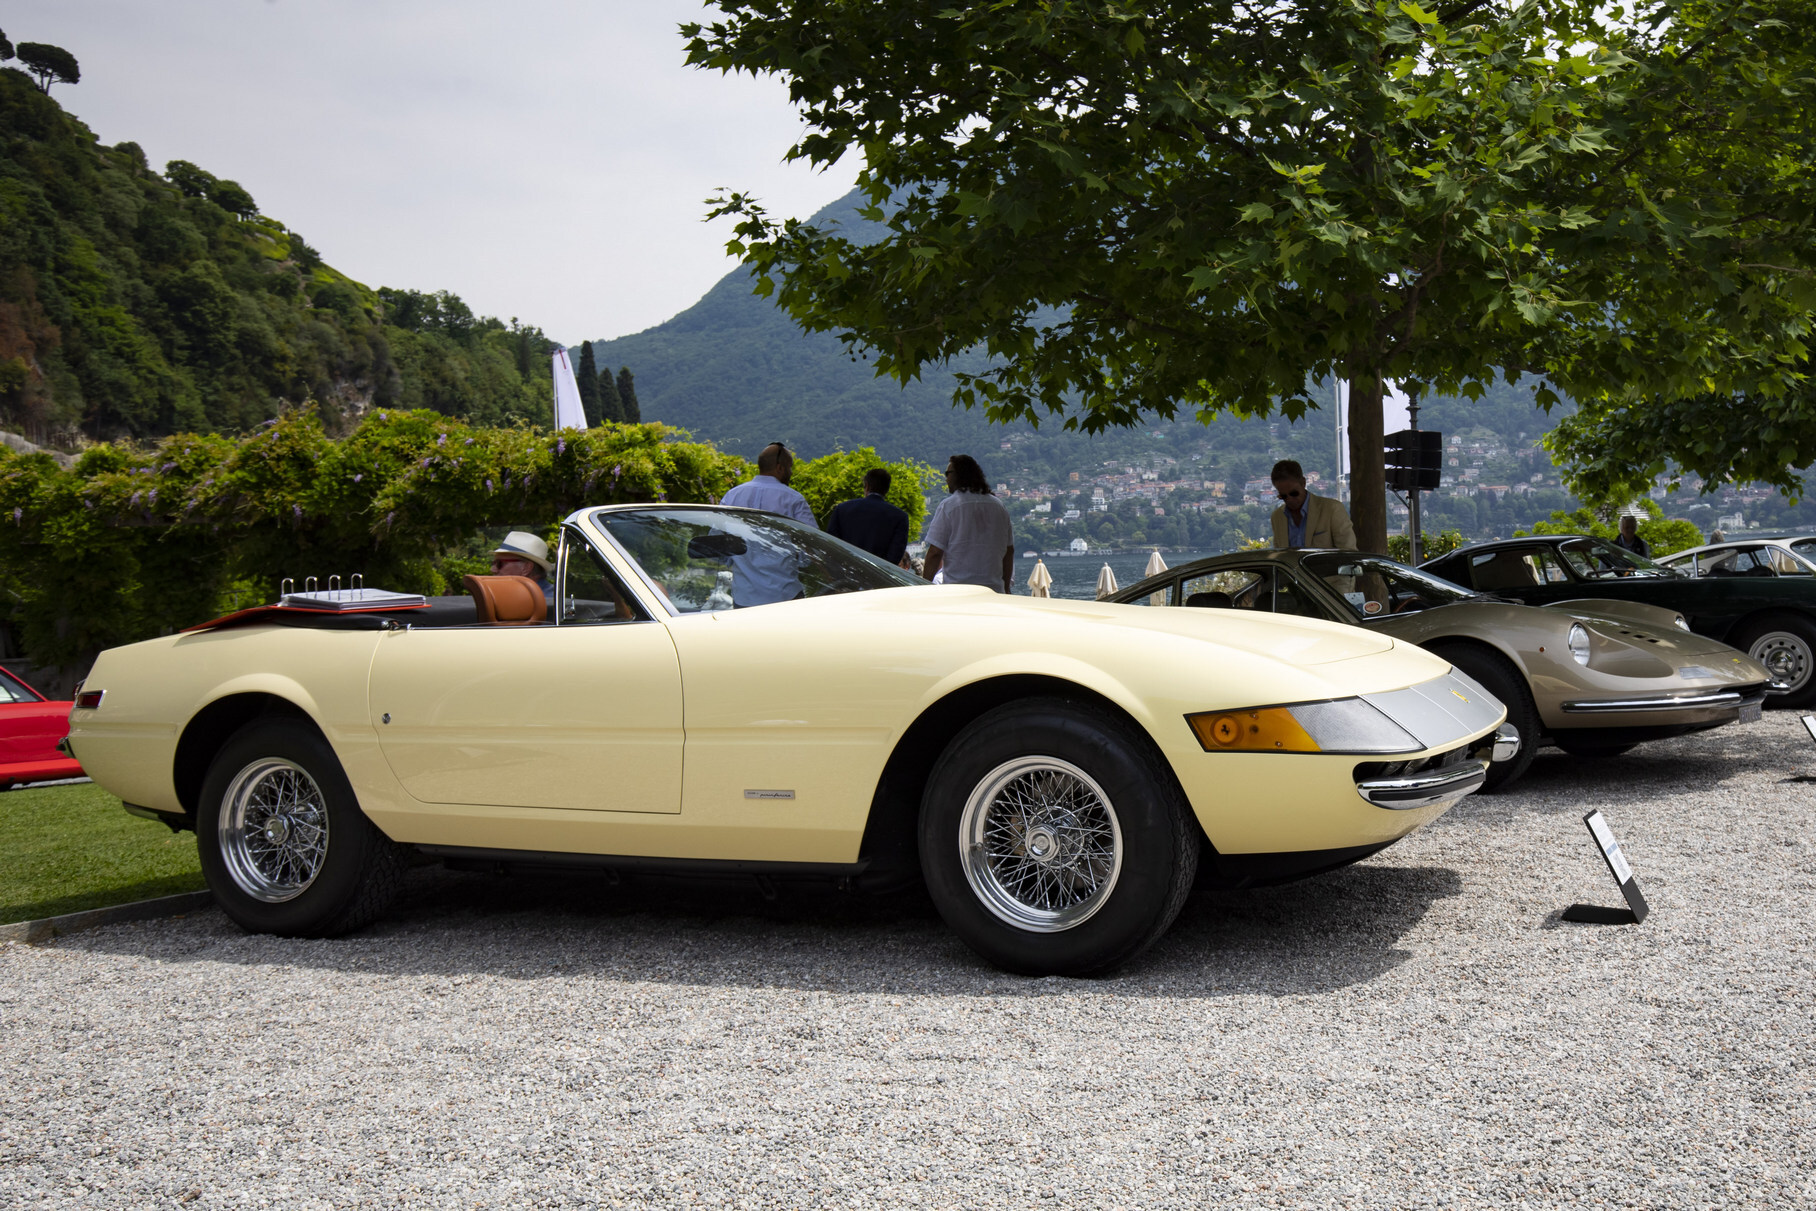 Ferrari 365 GTS/4 c открытым верхом считается одним из красивейших автомобилей в истории итальянской марки. Был выпущен 121 спайдер — подавляющее большинство из которых (96 штук) было продано в США. Эта машина песочно-жёлтого цвета 1971 года выпуска — не исключение. В Америке она даже снялась в триллере «Долгое прощание» Роберта Олтмена. Сейчас она живёт в Швейцарии: её хозяин — совладелец сети магазинов Тьери Халфф.